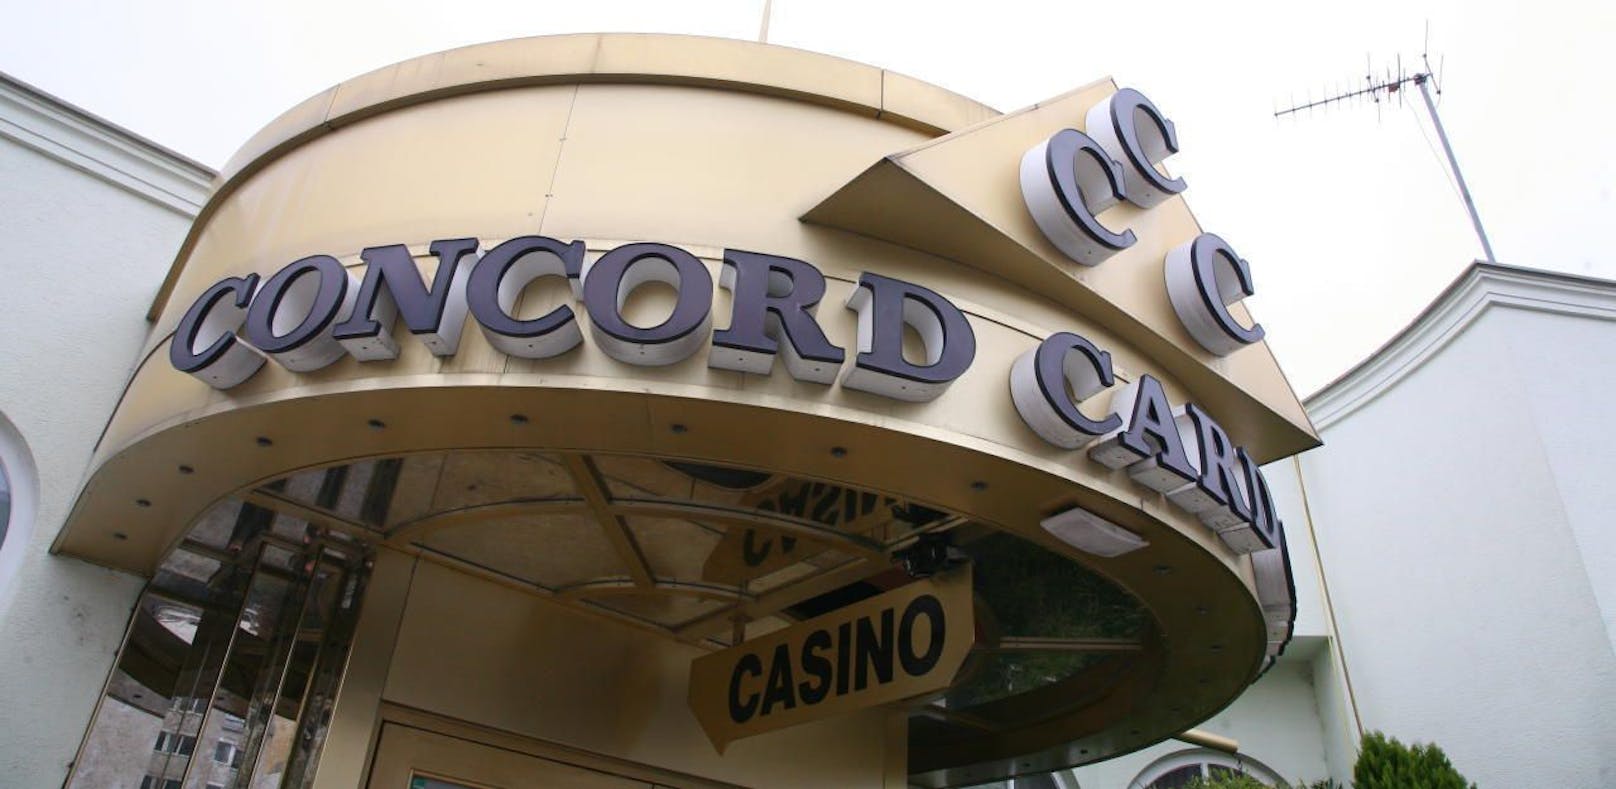 Concord Card Casinos müssen zusperren.